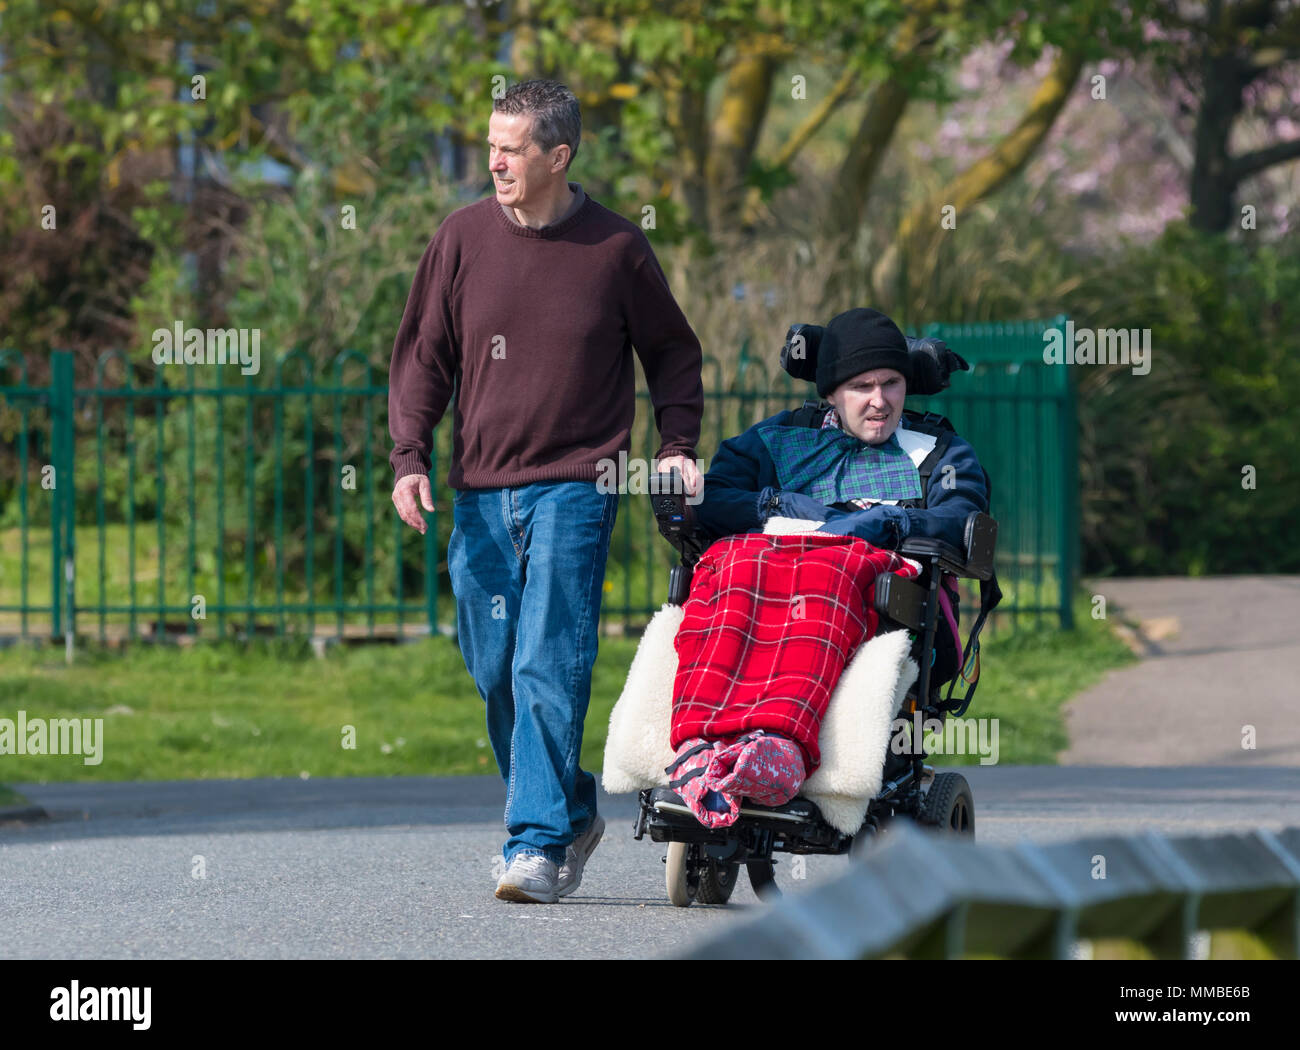 Männliche Pflegeperson helfen einem Menschen mit offensichtlichen Behinderungen im Rollstuhl, wandern durch einen Park in Großbritannien. Stockfoto